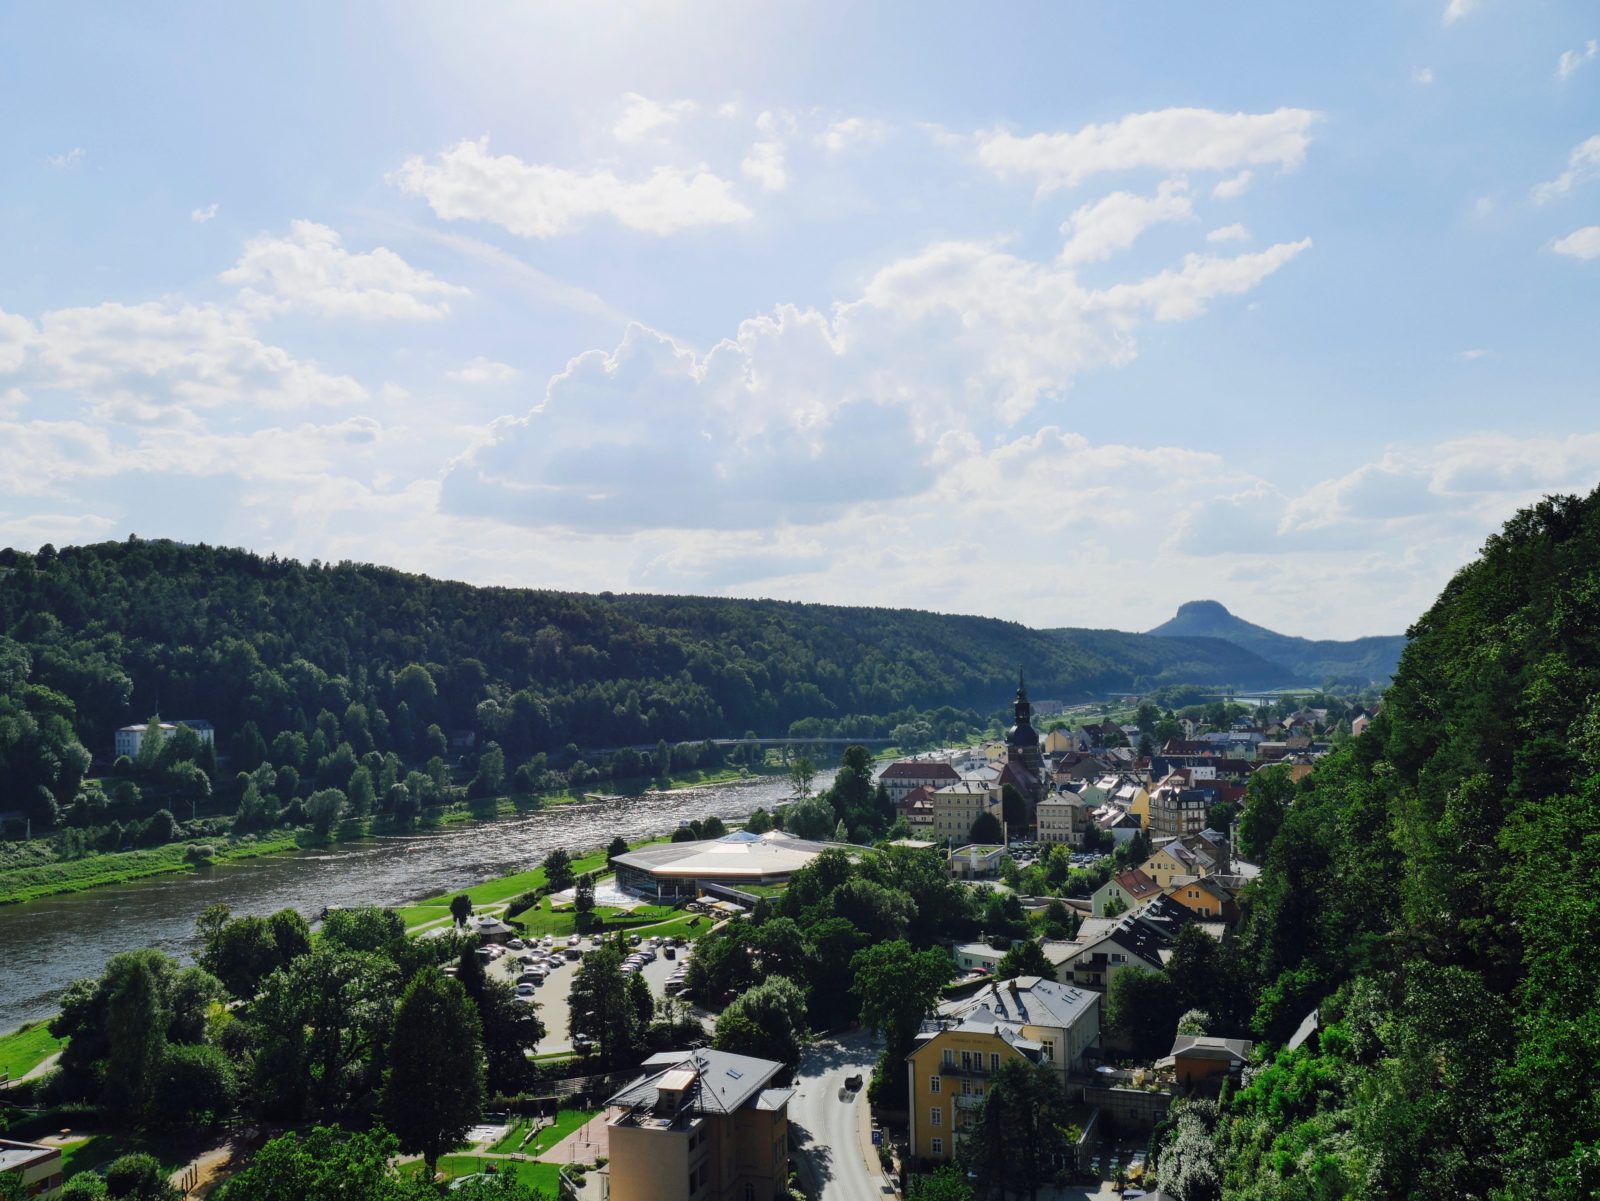 Ein Wochenende in der Sächsischen Schweiz: Hoteltip, Wandern zur Bastei, Dampfschifffahrt, Fahrradtour und vieles mehr!